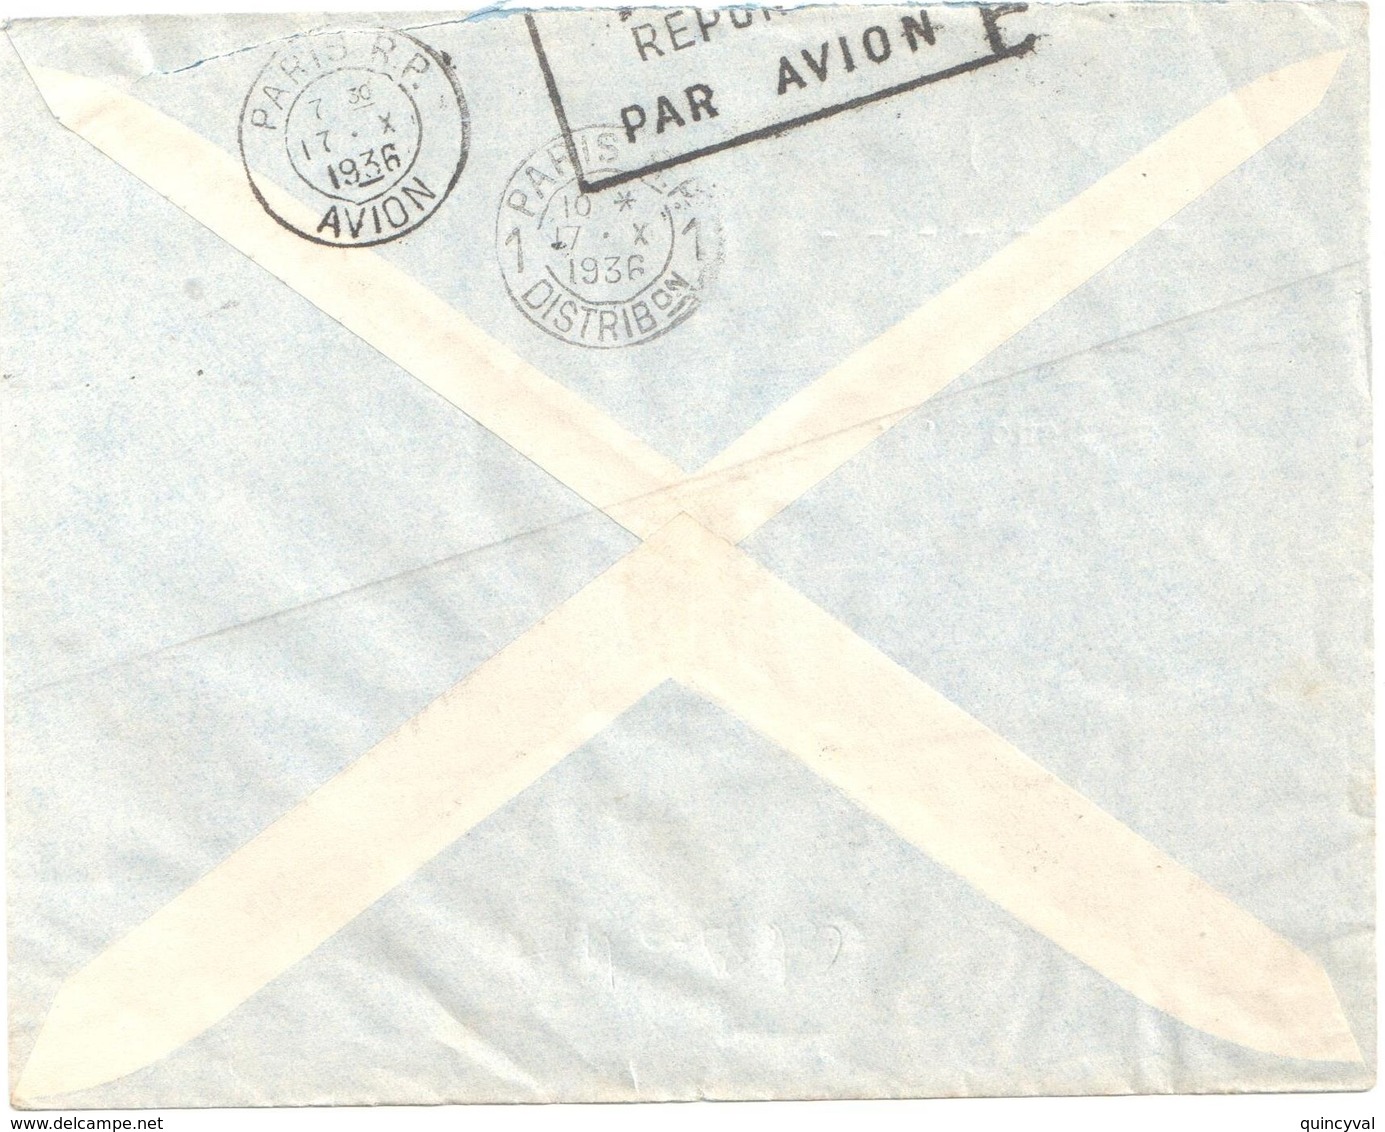 GAO Soudan Français Lettre PAR AVION Ob 10 10 1936 Arrivée Verso 17/10/1936 1,25f Batelier Niger Yv 80 - Cartas & Documentos